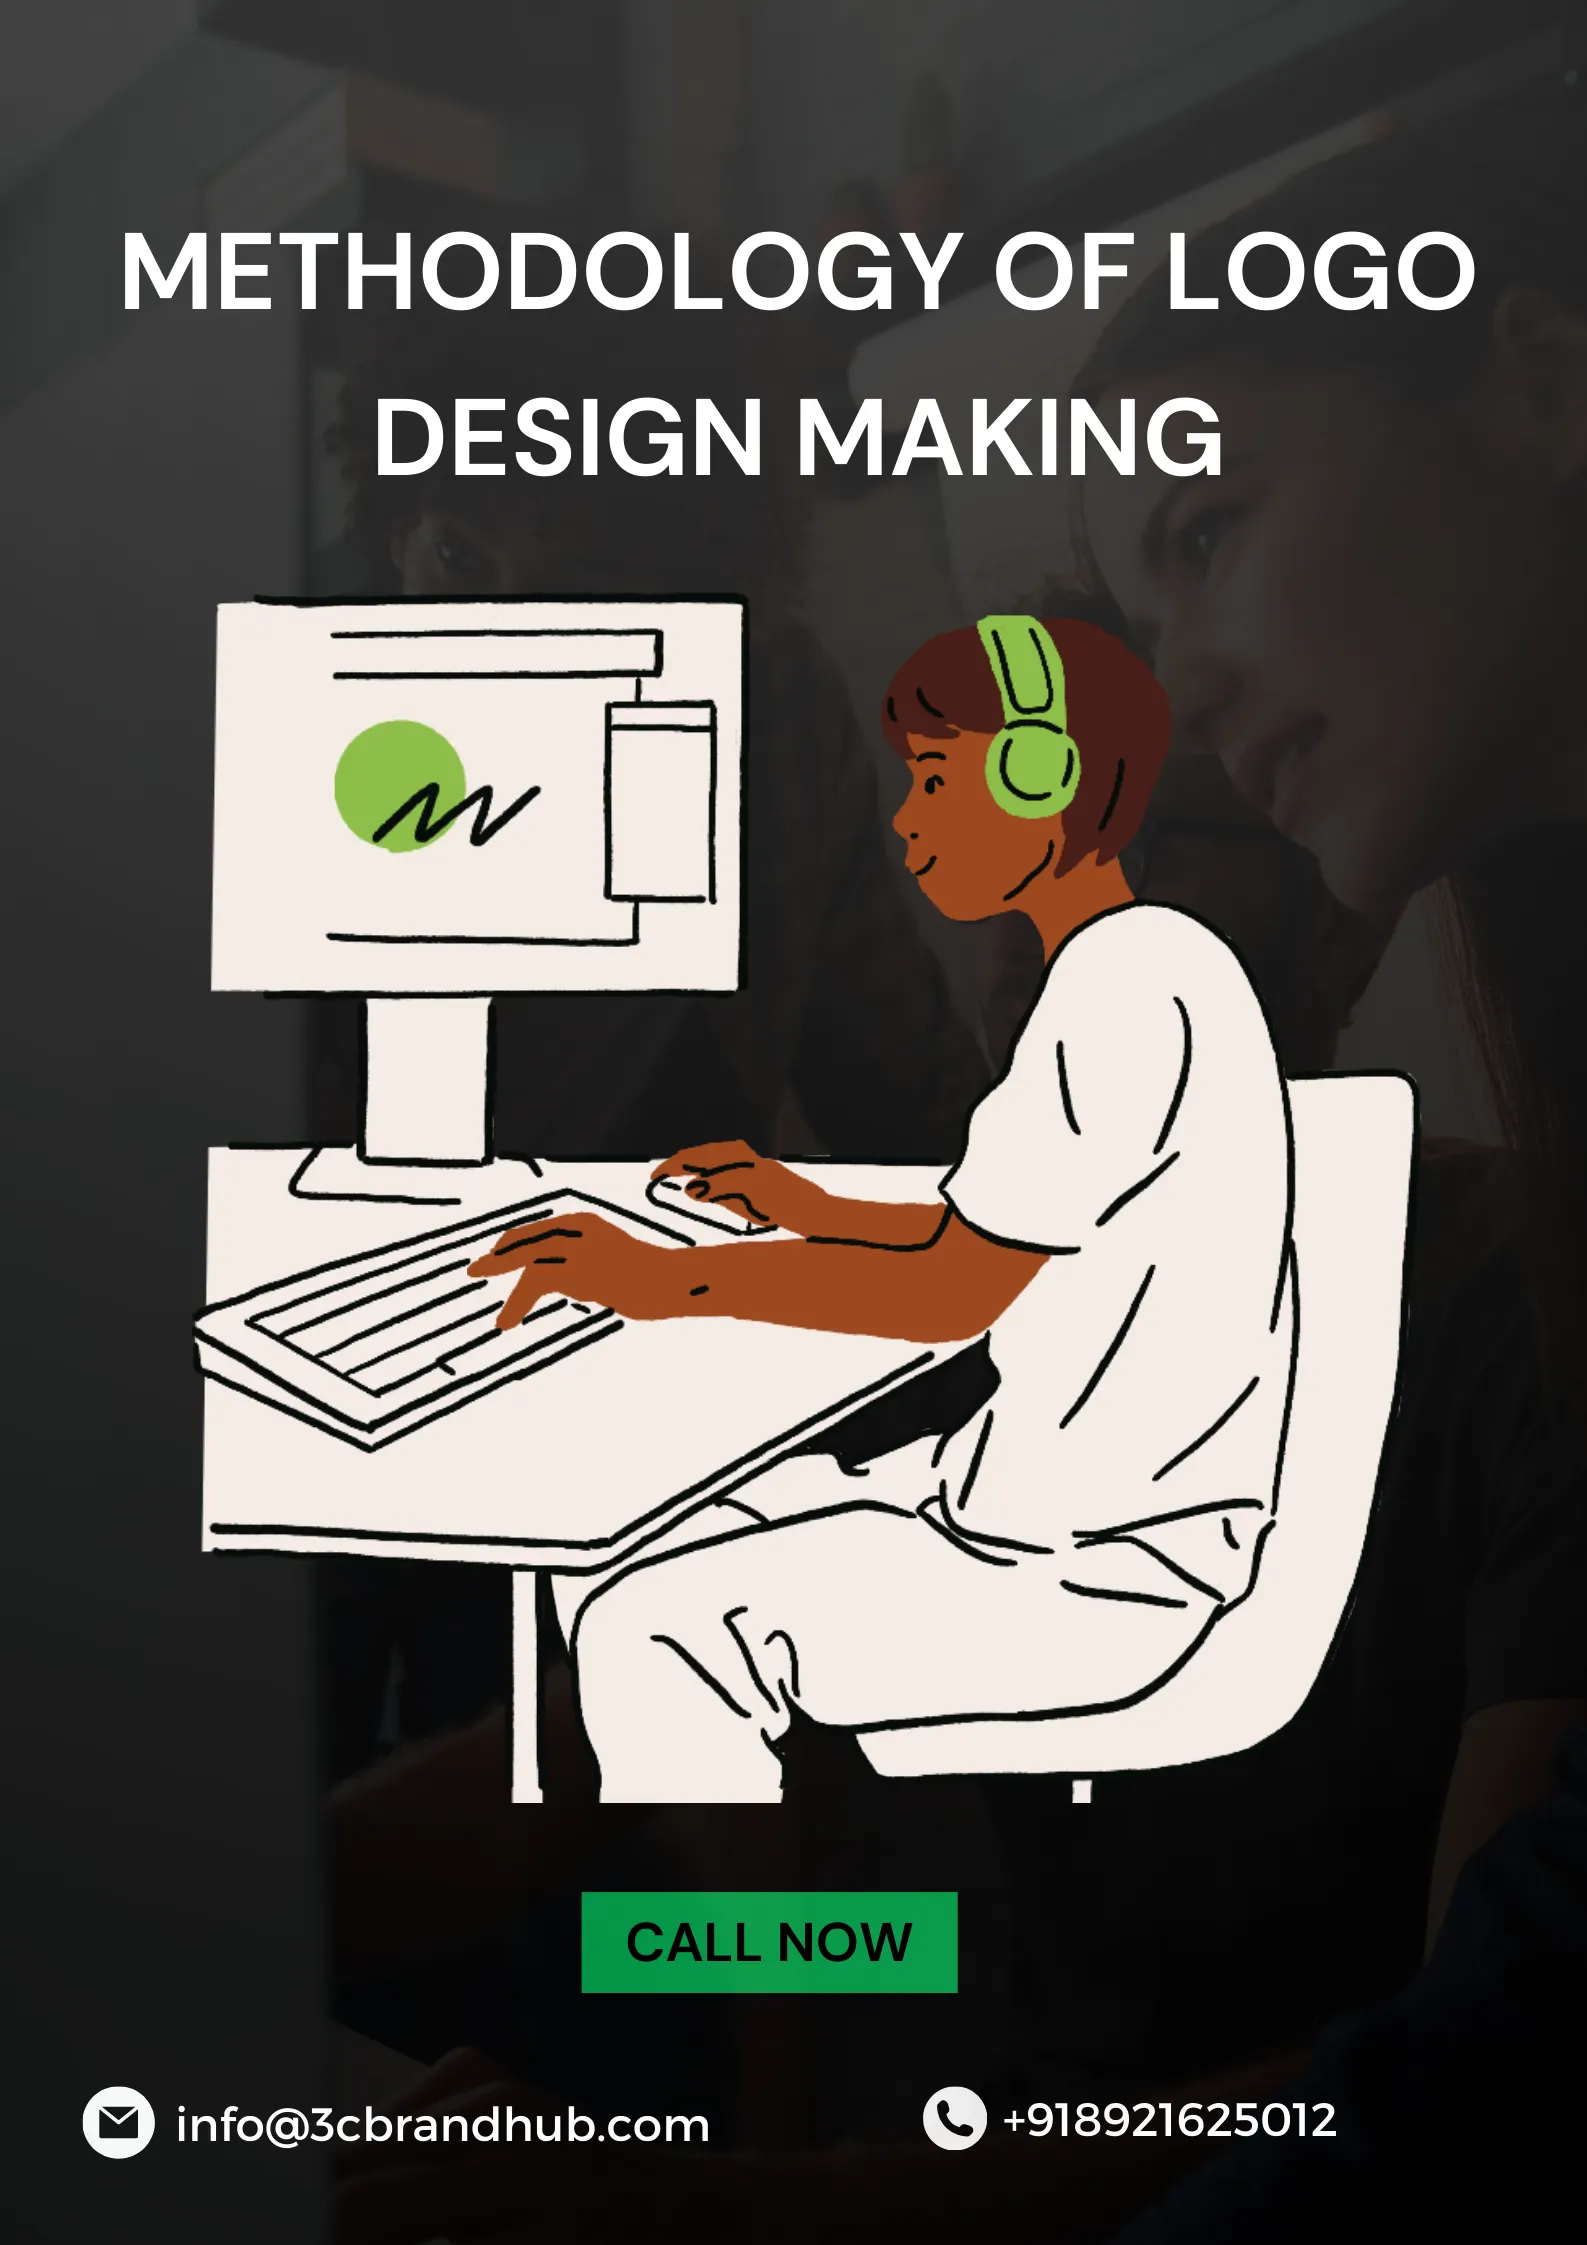 methodology of logo design making image in logo designing kolkata